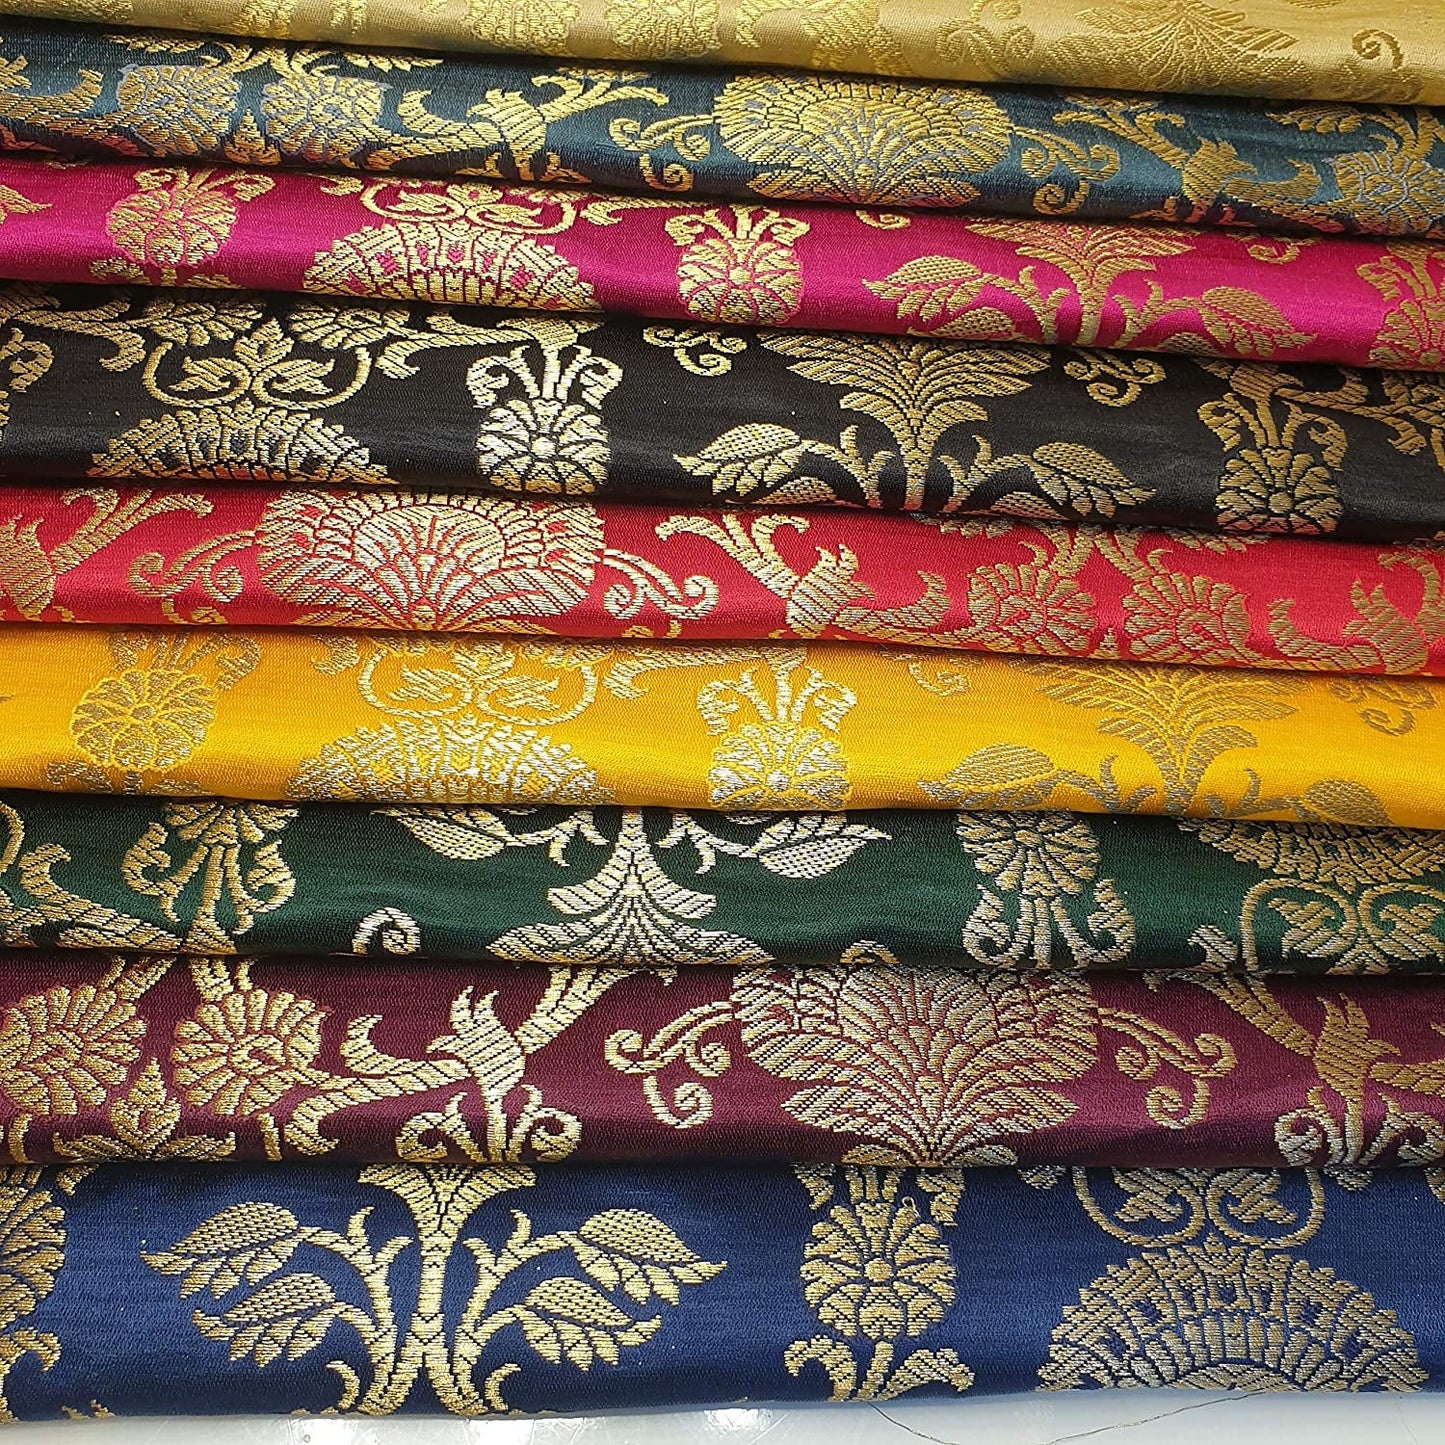 Ornamental Christmas (Plum) Floral Gold Metallic Print Indian Banarasi Brocade Fabric